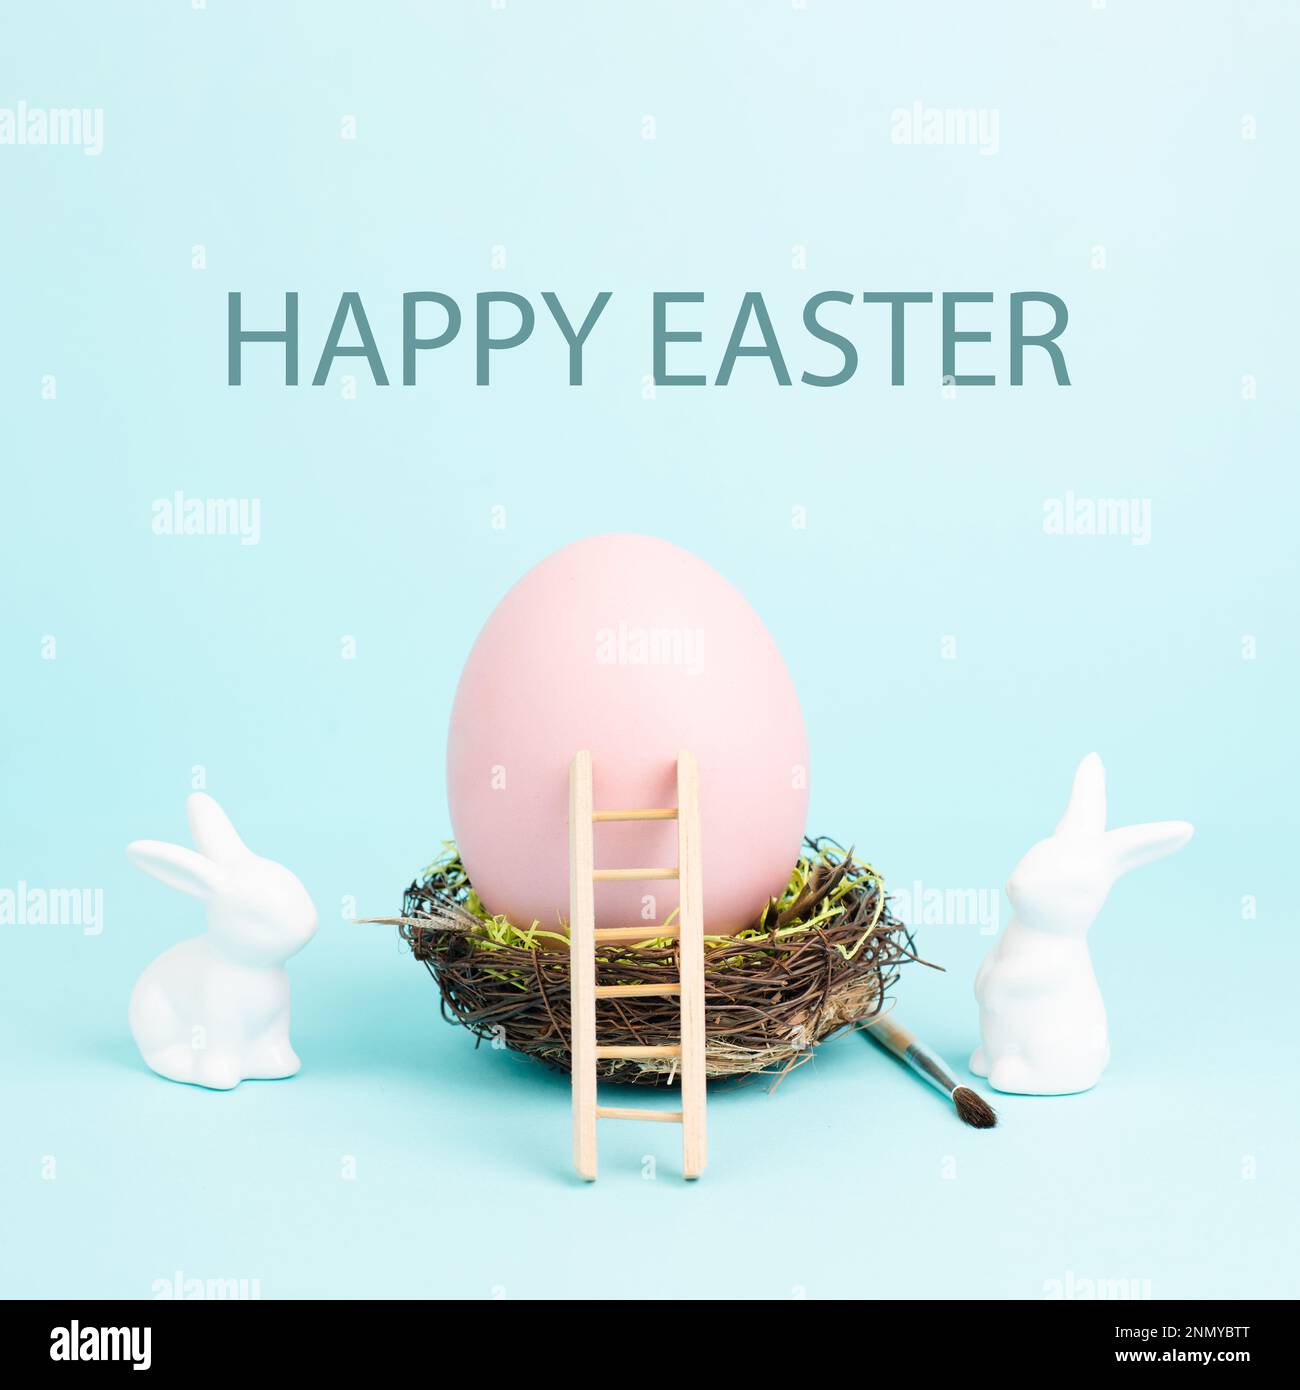 Lapin ou lapin de Pâques assis à côté d'un énorme œuf de couleur rose dans un nid d'oiseaux, pinceau et échelle, vacances de printemps Banque D'Images